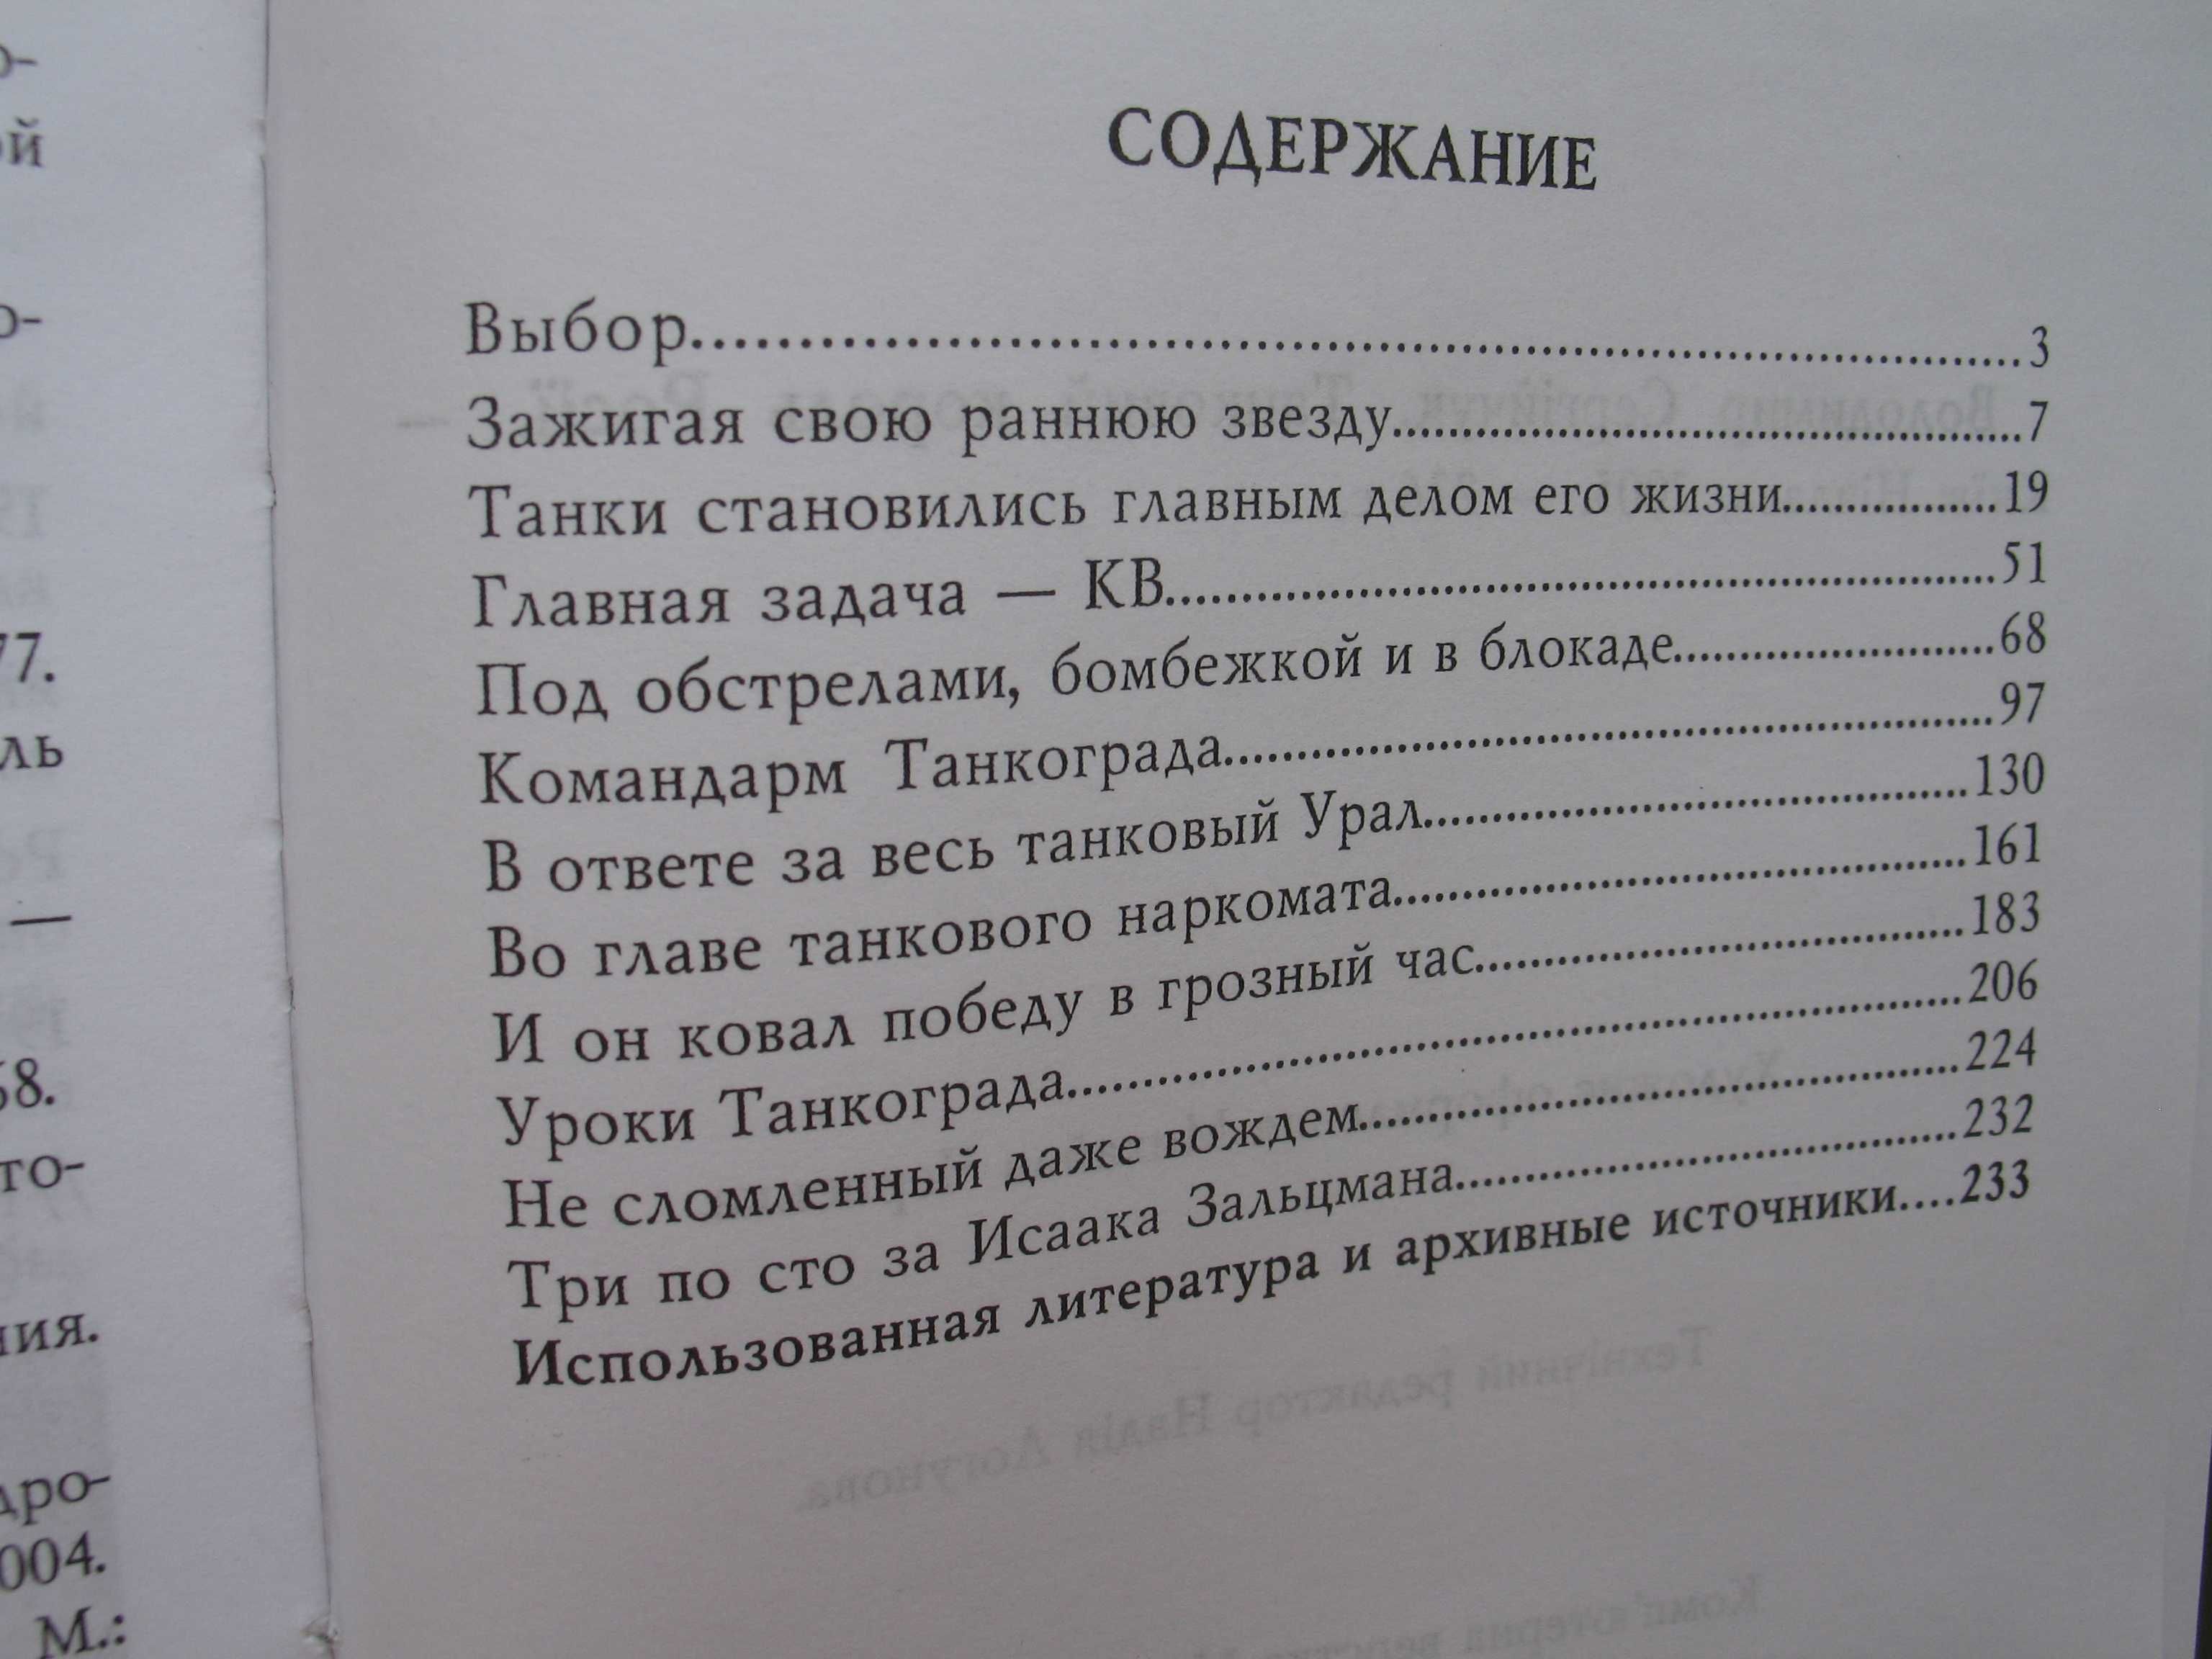 "Танковый король России" Владимир Сергийчук, 2005 год, тираж 1 000